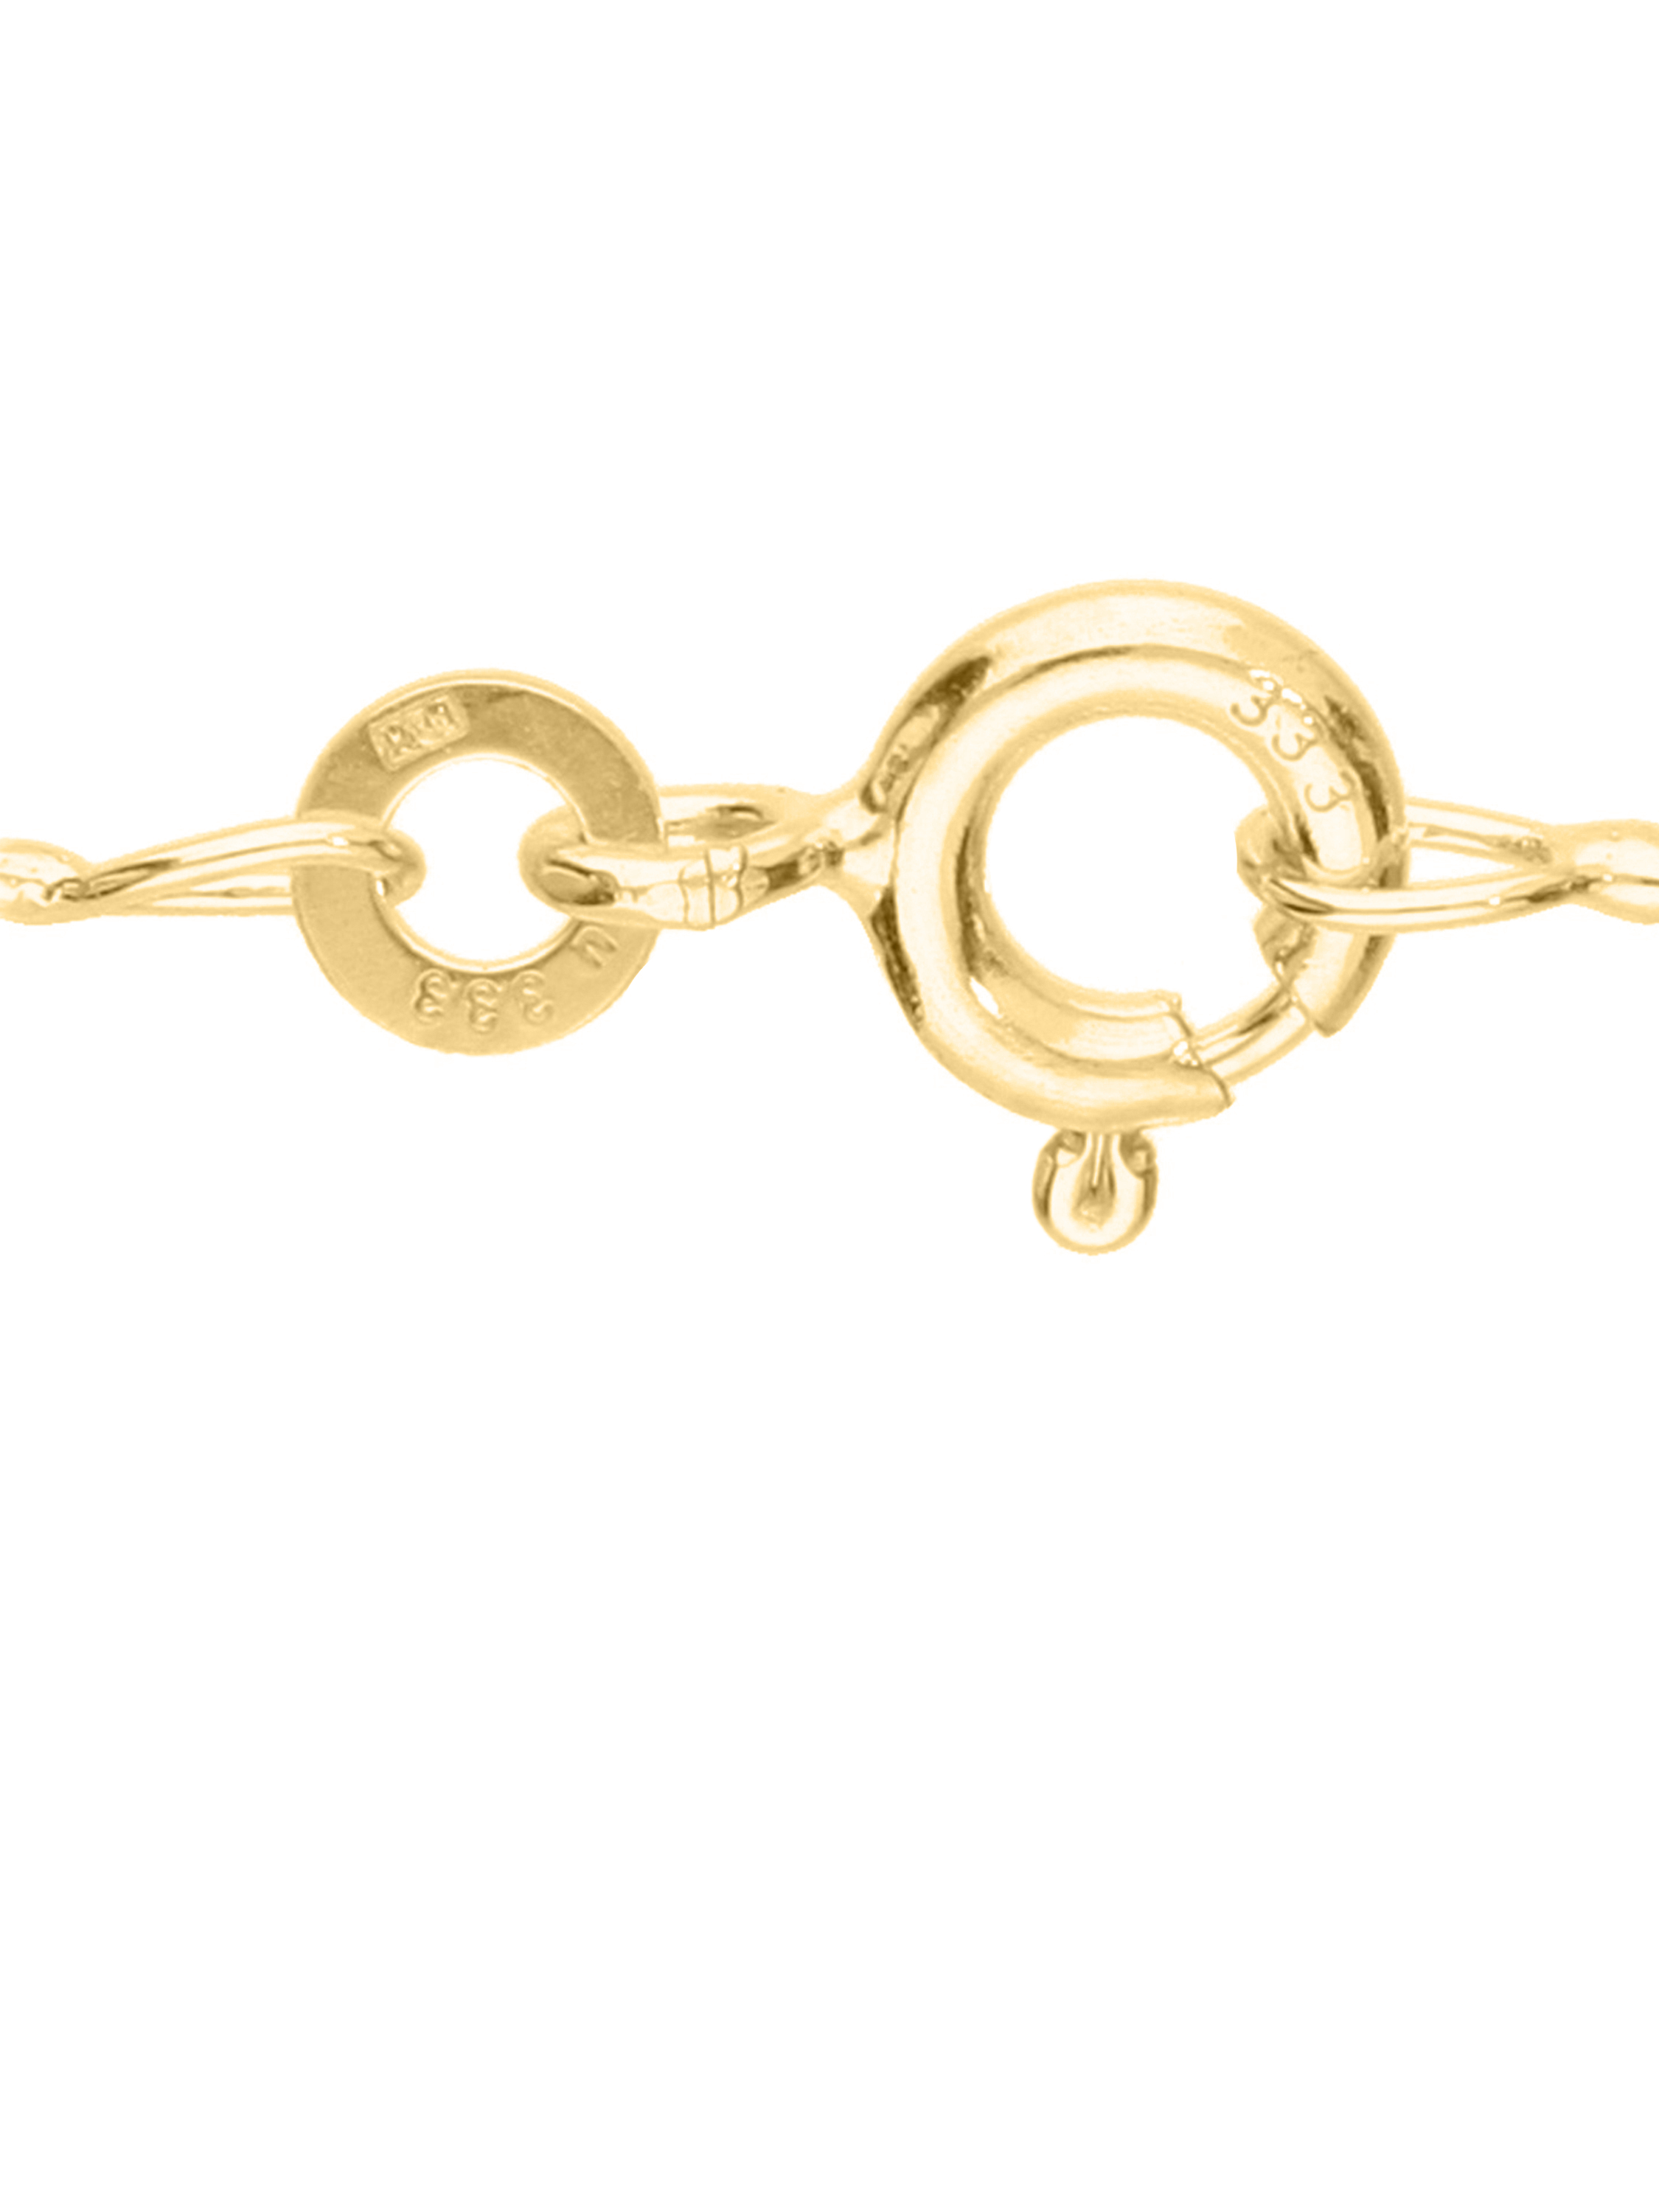 Dajana - Kreis Zirkonia Halskette mit Anhänger 333 Gold